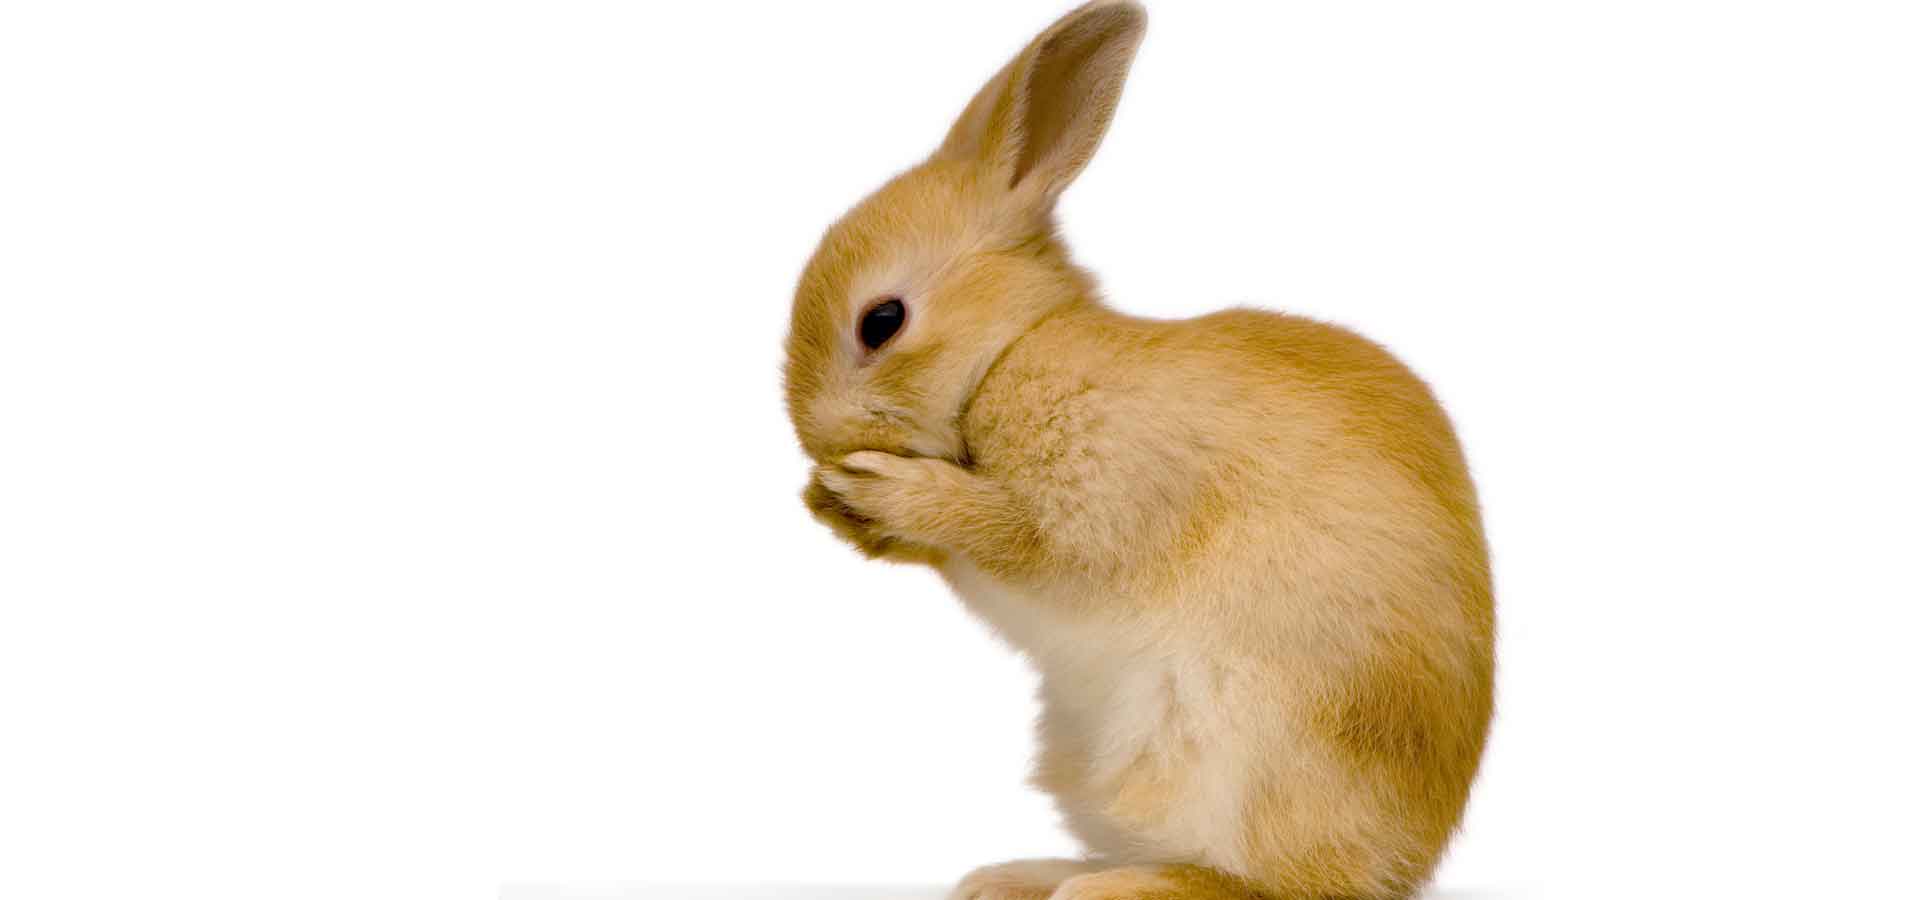 Tierarzt Kaninchen